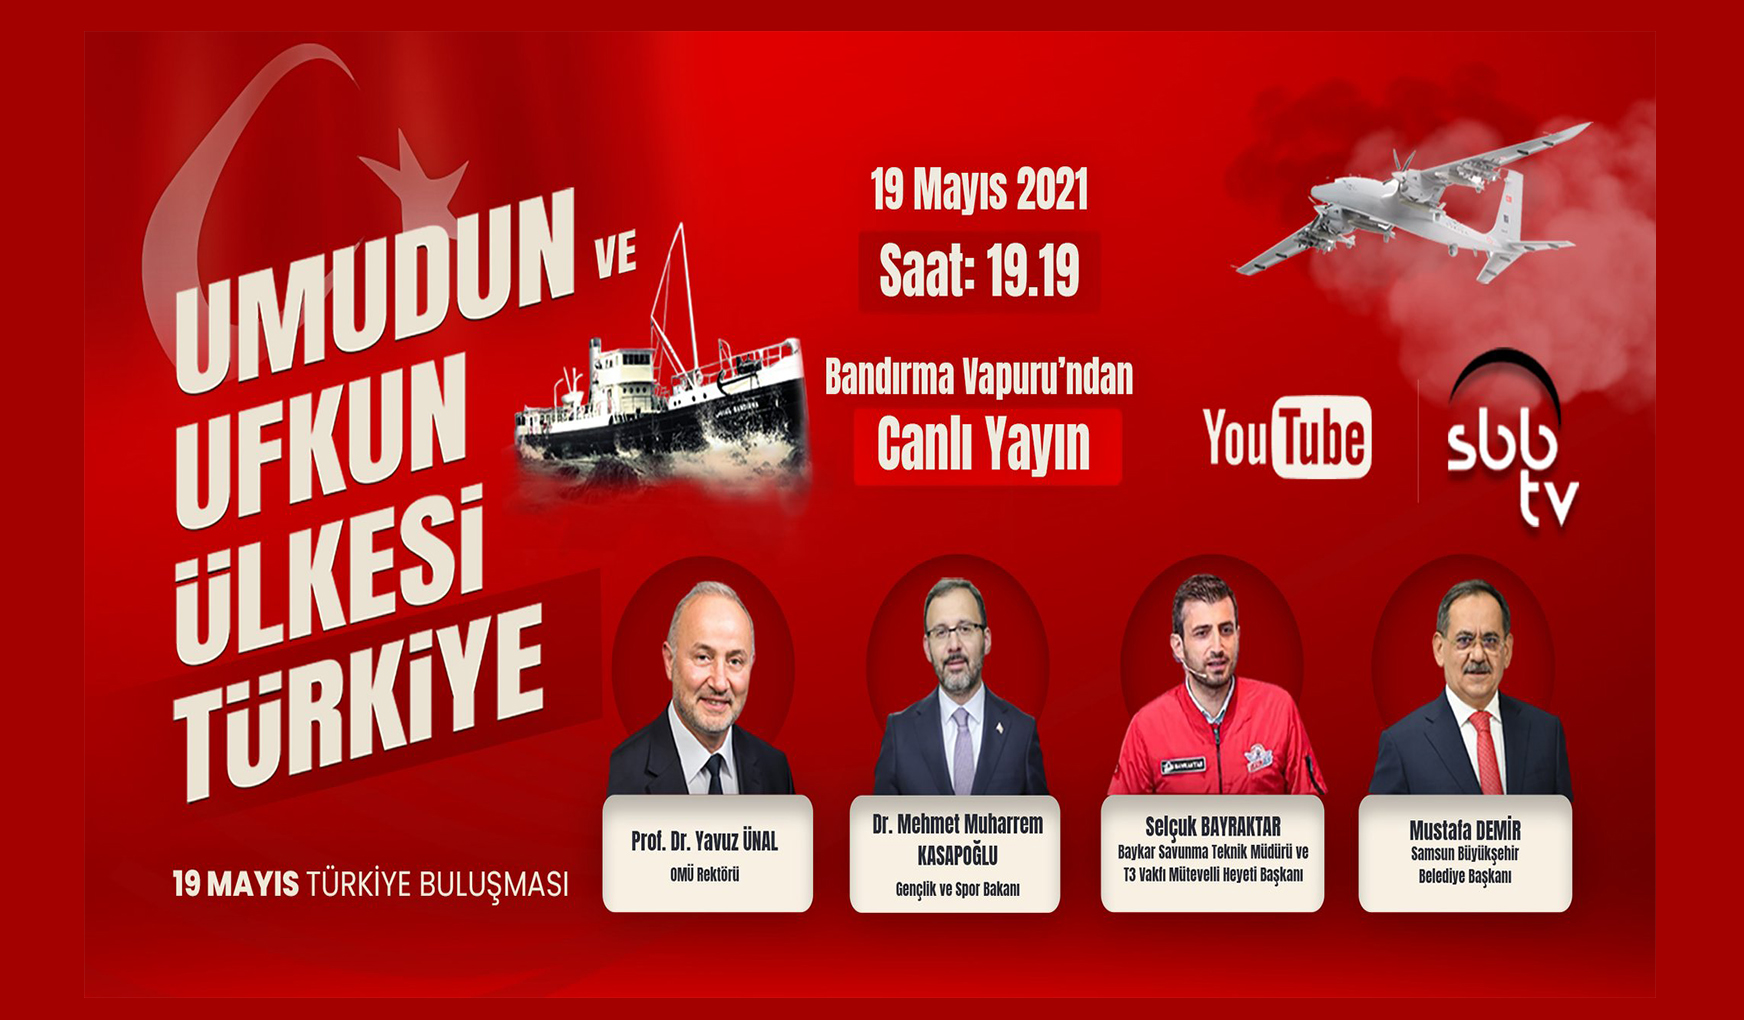  Bakan Kasapoğlu ve Selçuk Bayraktar ’19 Mayıs Türkiye Buluşması’ Programına Katılacak